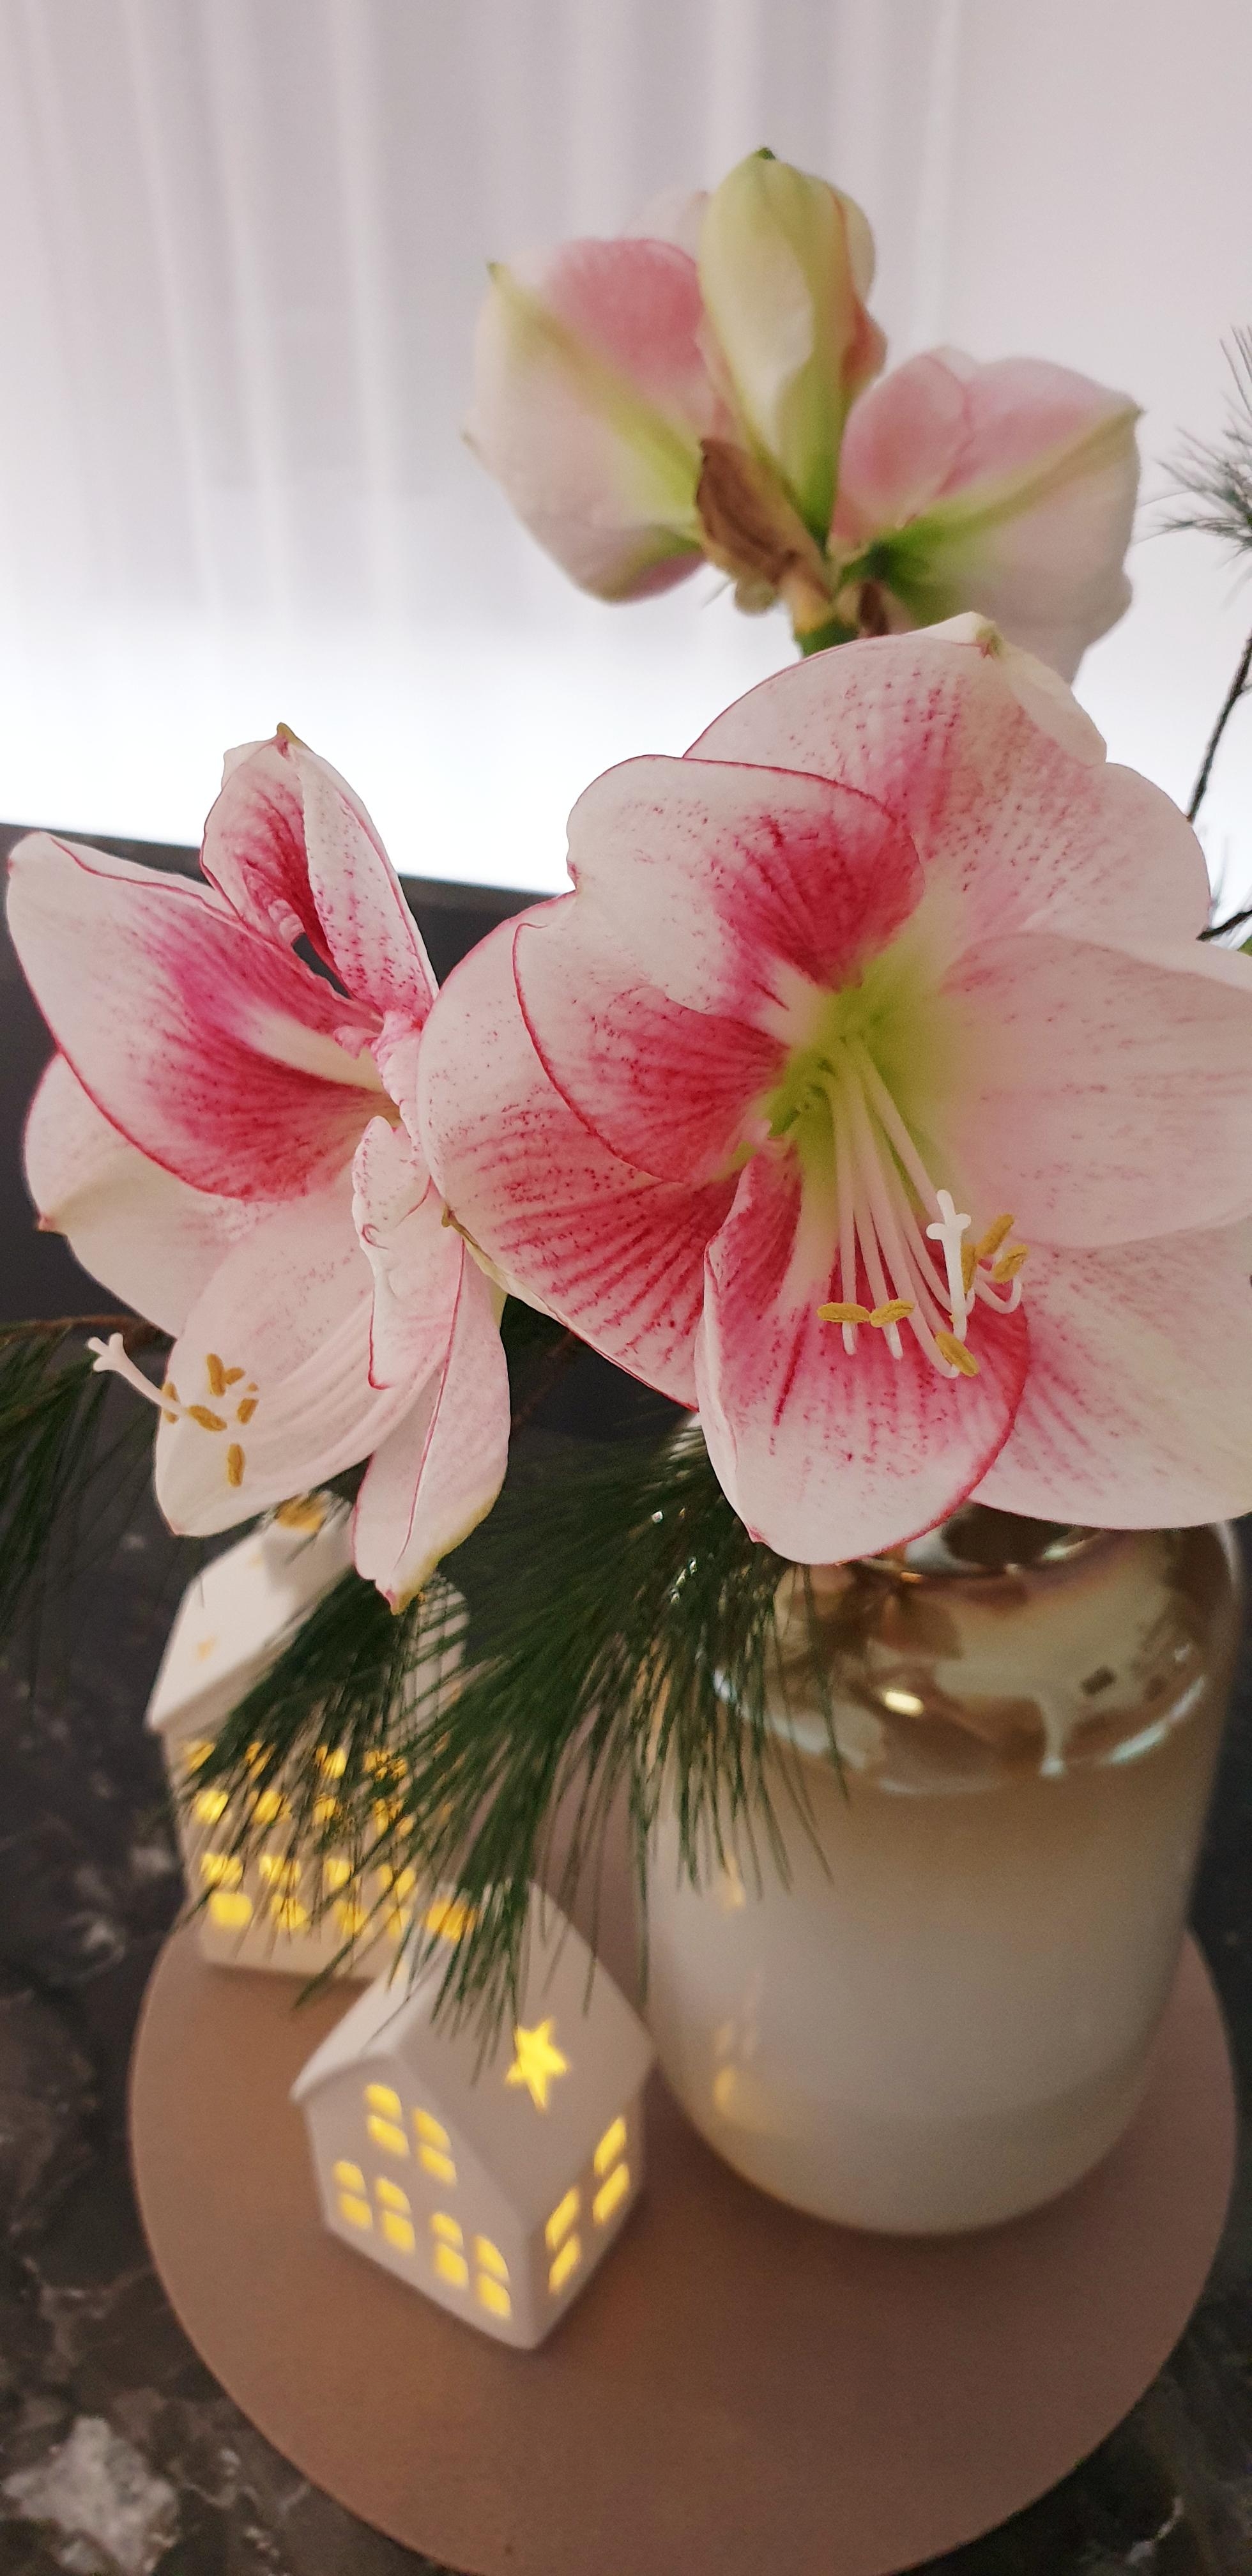 Ich liebe diese Blumen!

#Amaryllis#Lichterdeko#langeAbende
#fürweihnachtsdekoistesniezufrüh
#allergikerfreundlich